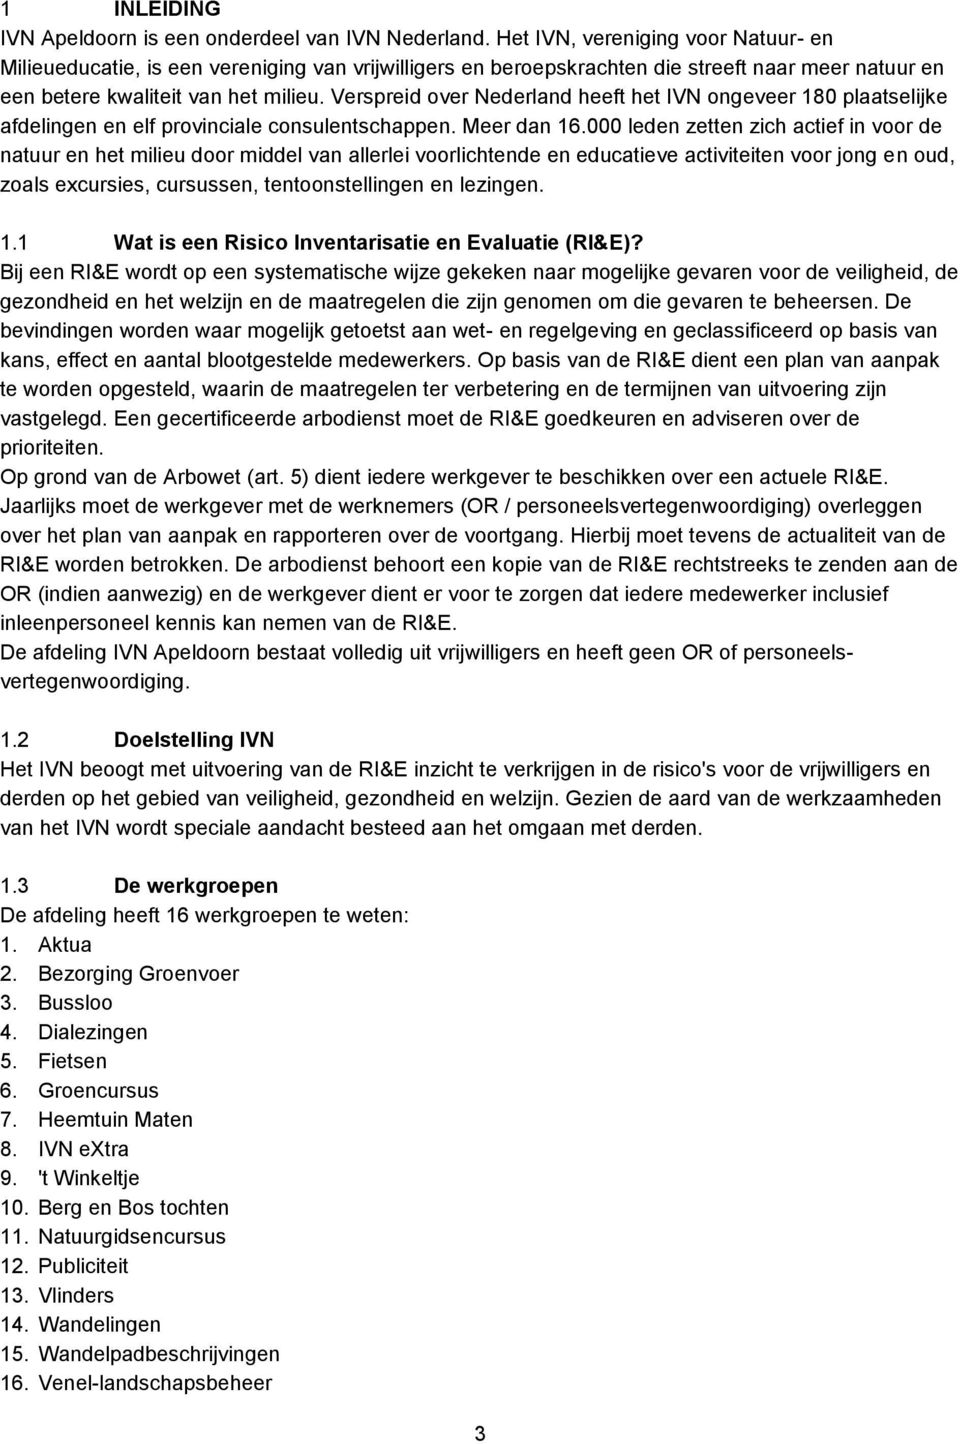 Verspreid over Nederland heeft het IVN ongeveer 180 plaatselijke afdelingen en elf provinciale consulentschappen. Meer dan 16.